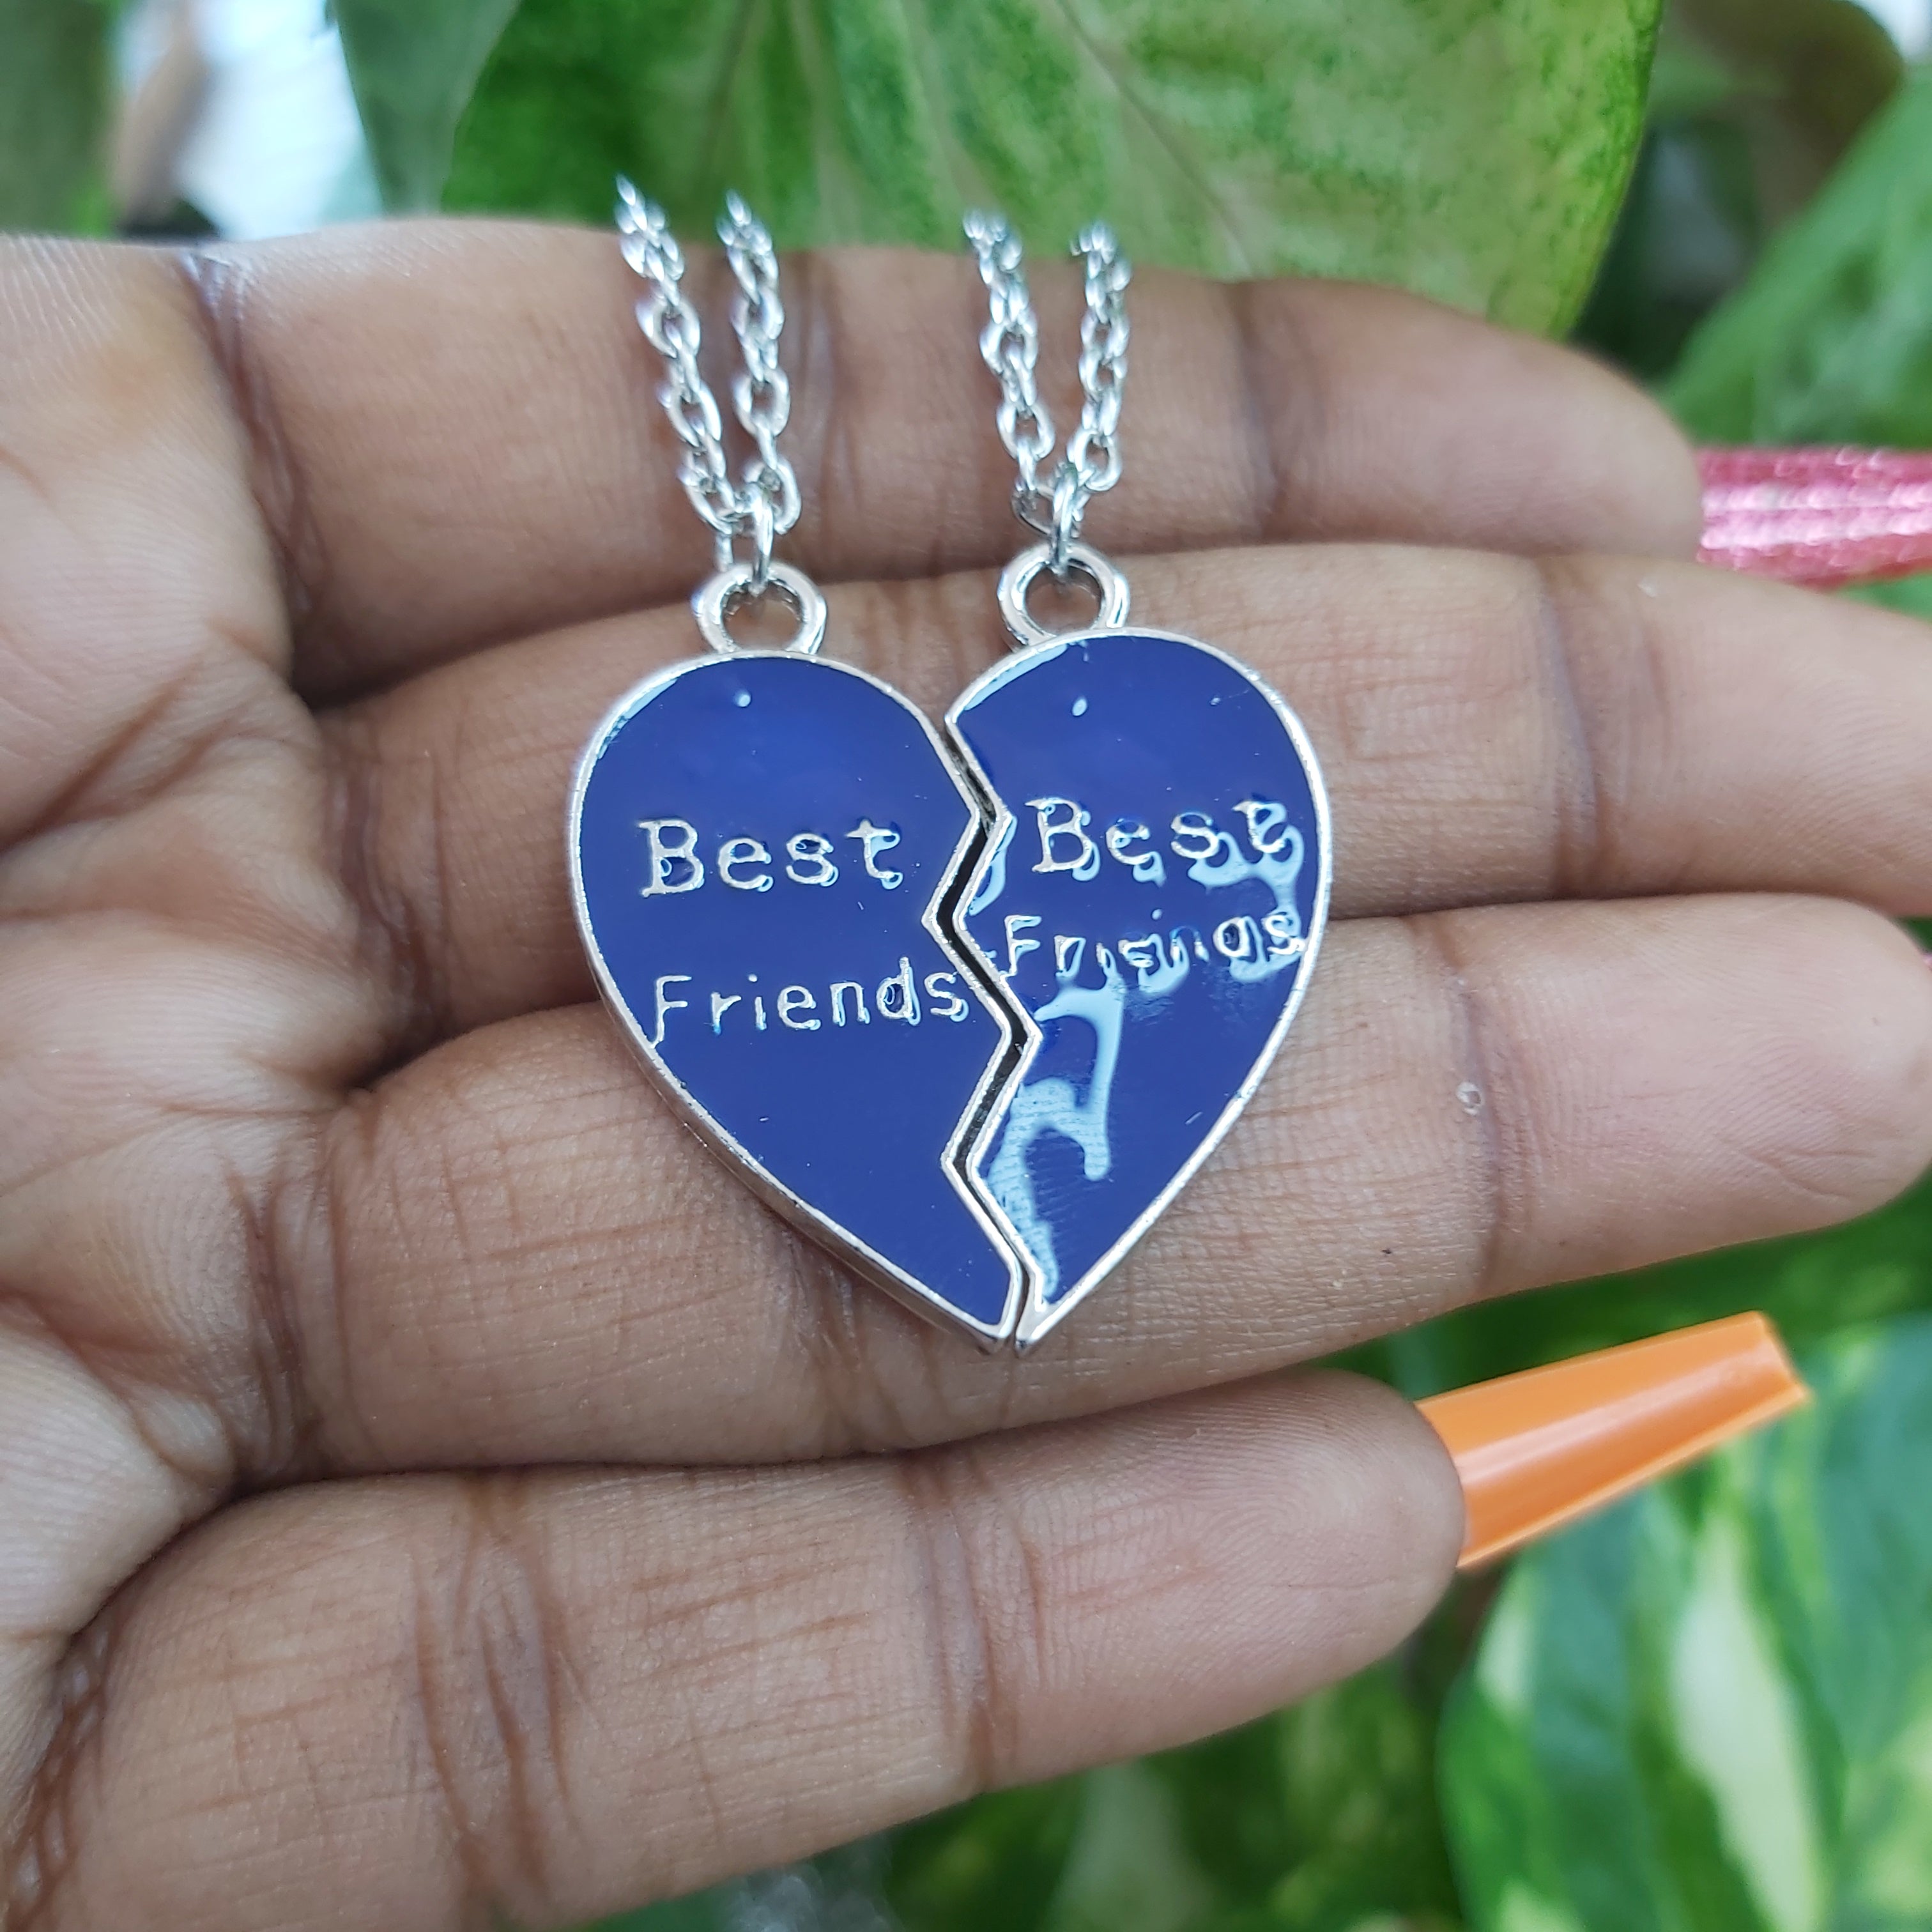 Best Friends / Besties Heart Fashion Necklaces